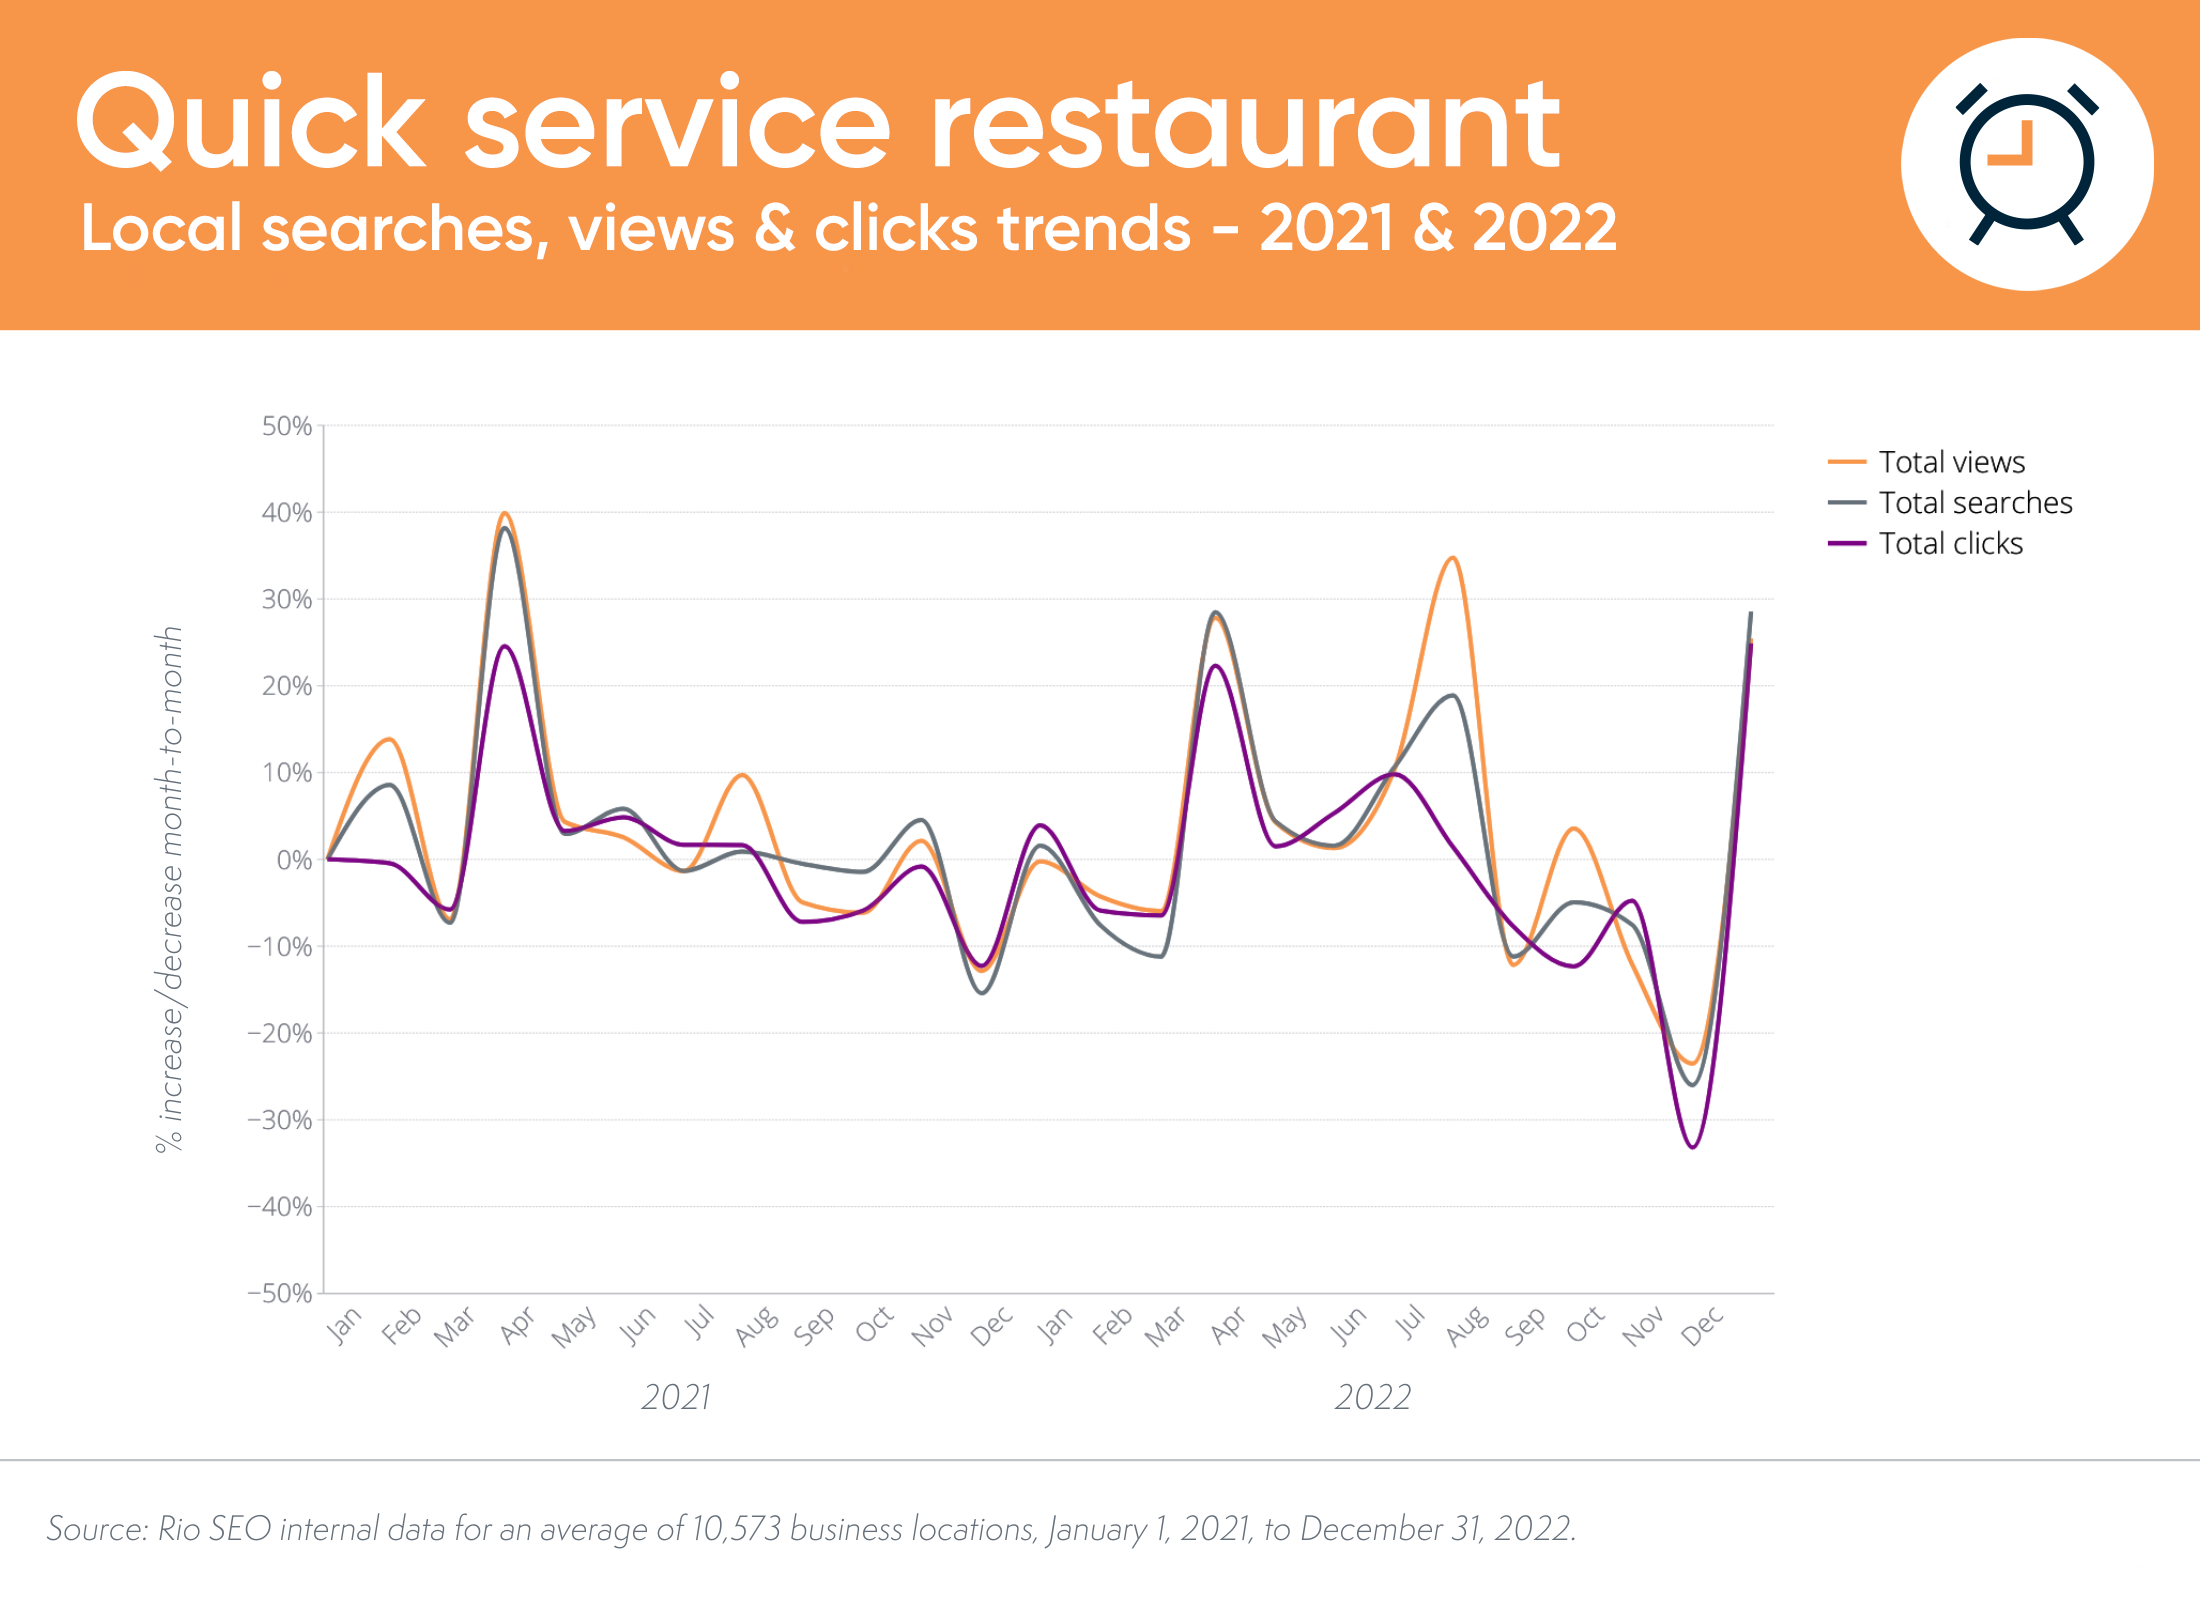 tendințele locale de căutare și conversie la restaurante cu servicii rapide